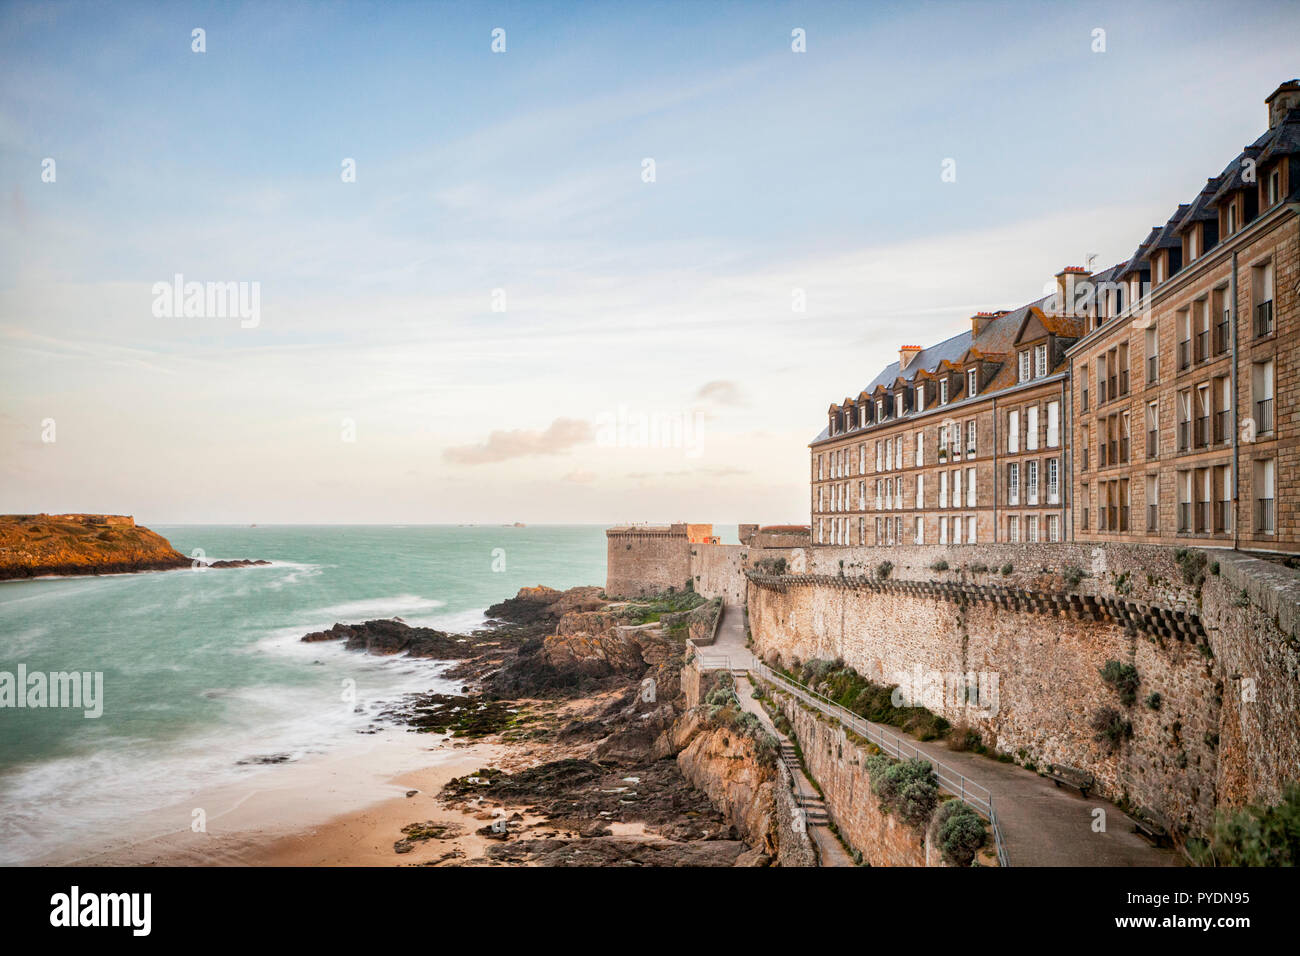 La ville fortifiée de Saint-Malo, la Bretagne, à l'aube. Banque D'Images